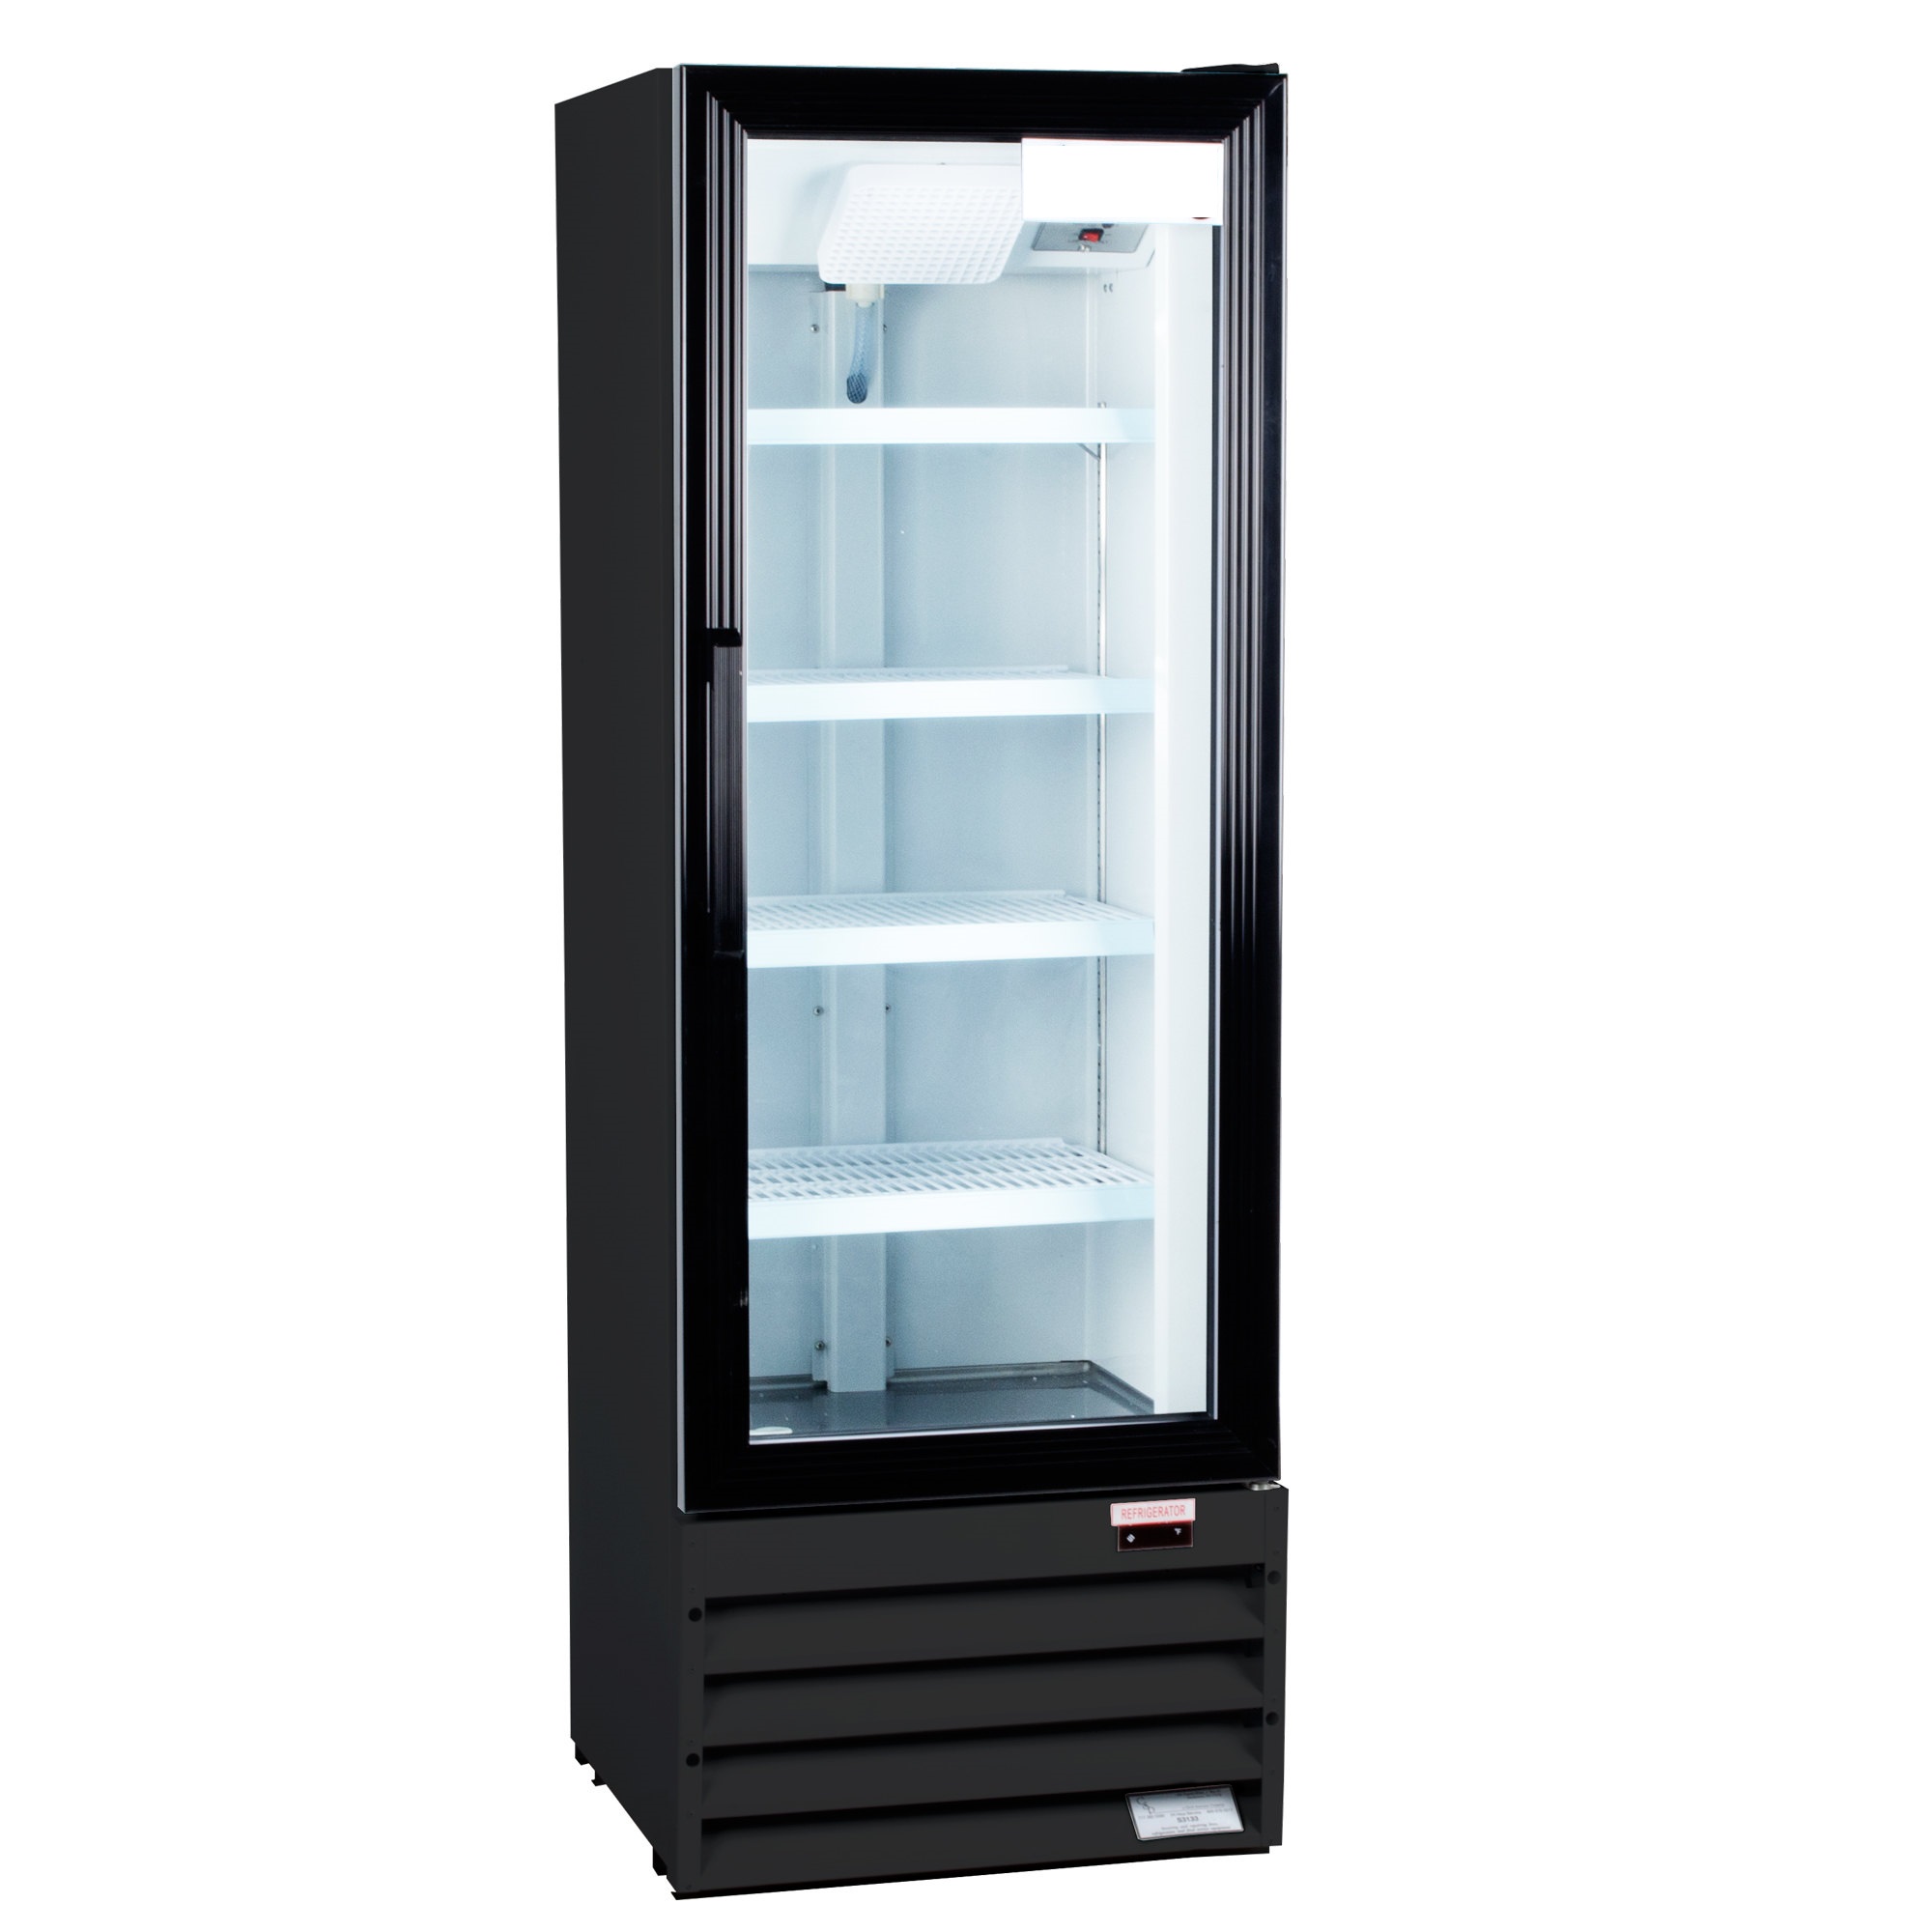 Холодильник с прозрачной дверью: стильный и современный агрегат